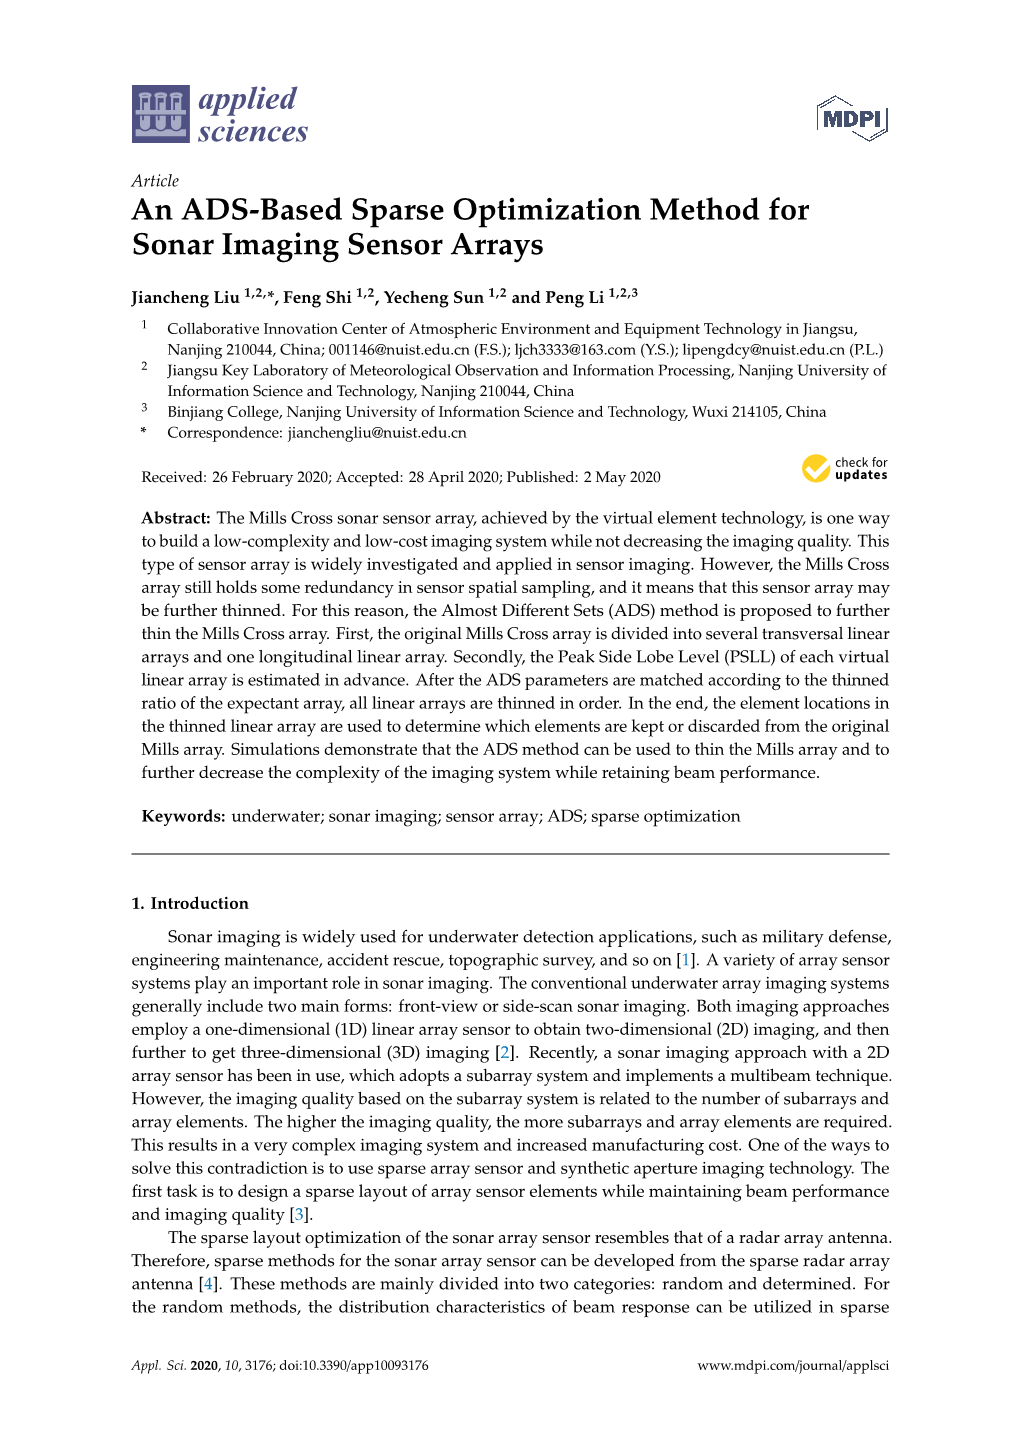 An ADS-Based Sparse Optimization Method for Sonar Imaging Sensor Arrays